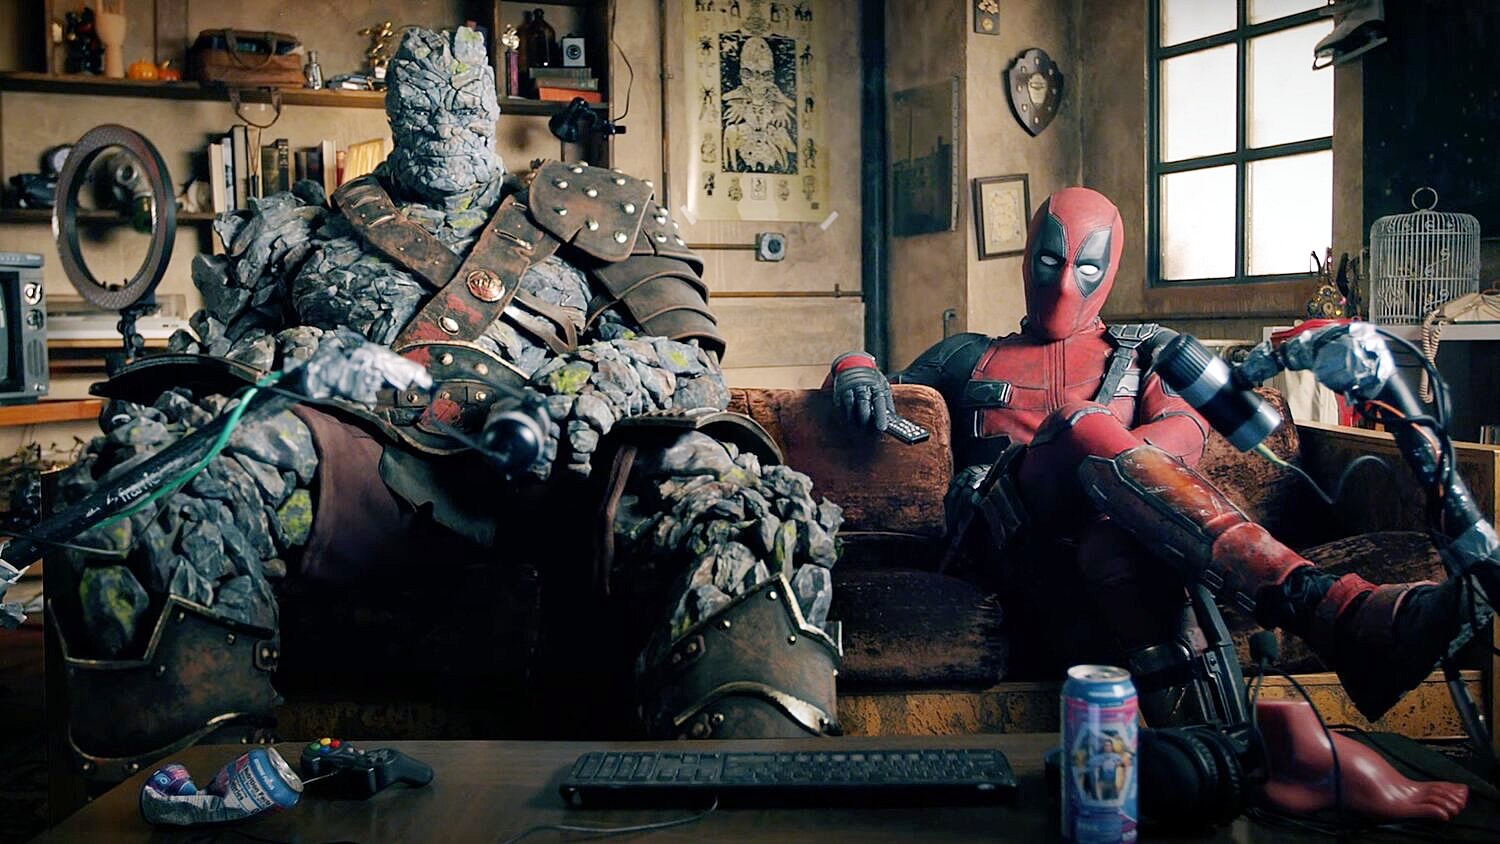 Deadpool e Korg se juntam para vídeo de reação sobre o filme Free Guy com Ryan Reynolds e Taika Waititi